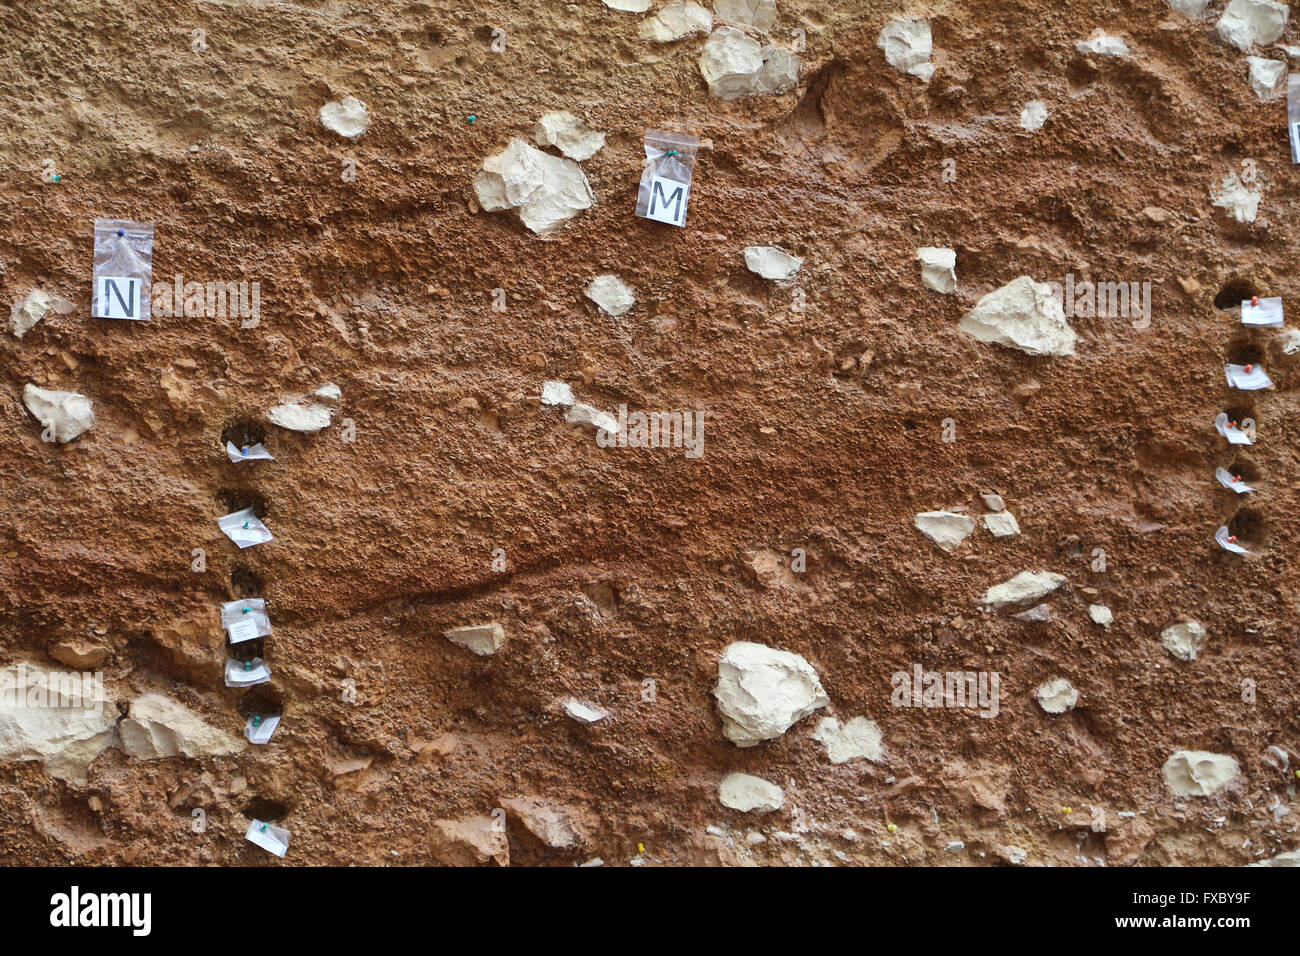 Las excavaciones arqueológicas. Los materiales de estudio permanece. La estratigrafía. Atapuerca. Burgos. España. Foto de stock